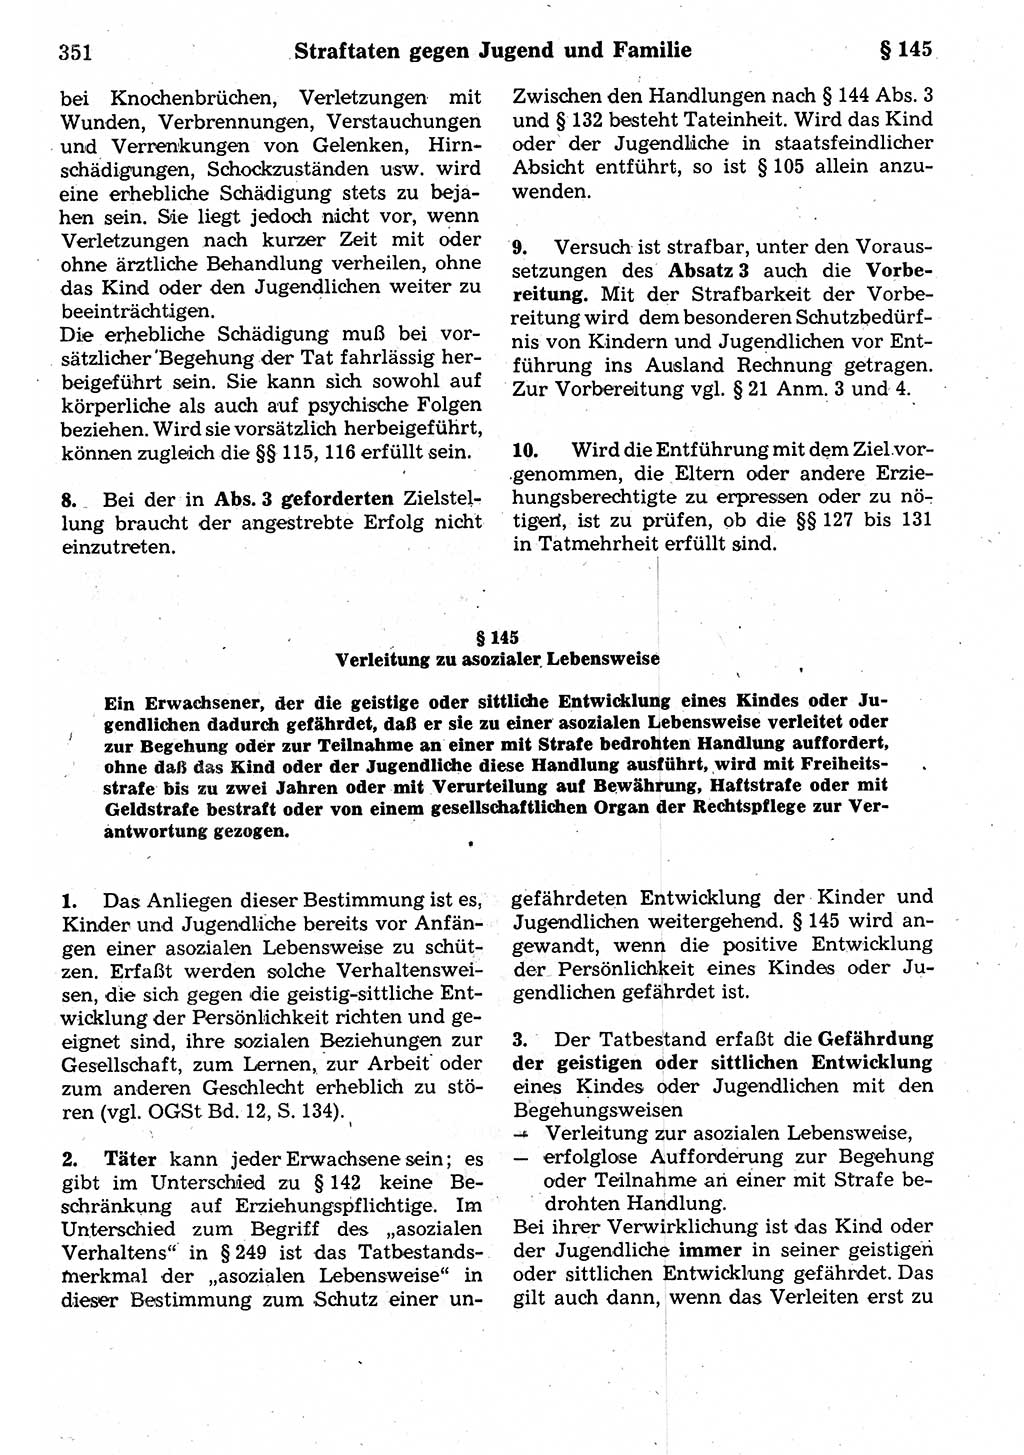 Strafrecht der Deutschen Demokratischen Republik (DDR), Kommentar zum Strafgesetzbuch (StGB) 1987, Seite 351 (Strafr. DDR Komm. StGB 1987, S. 351)